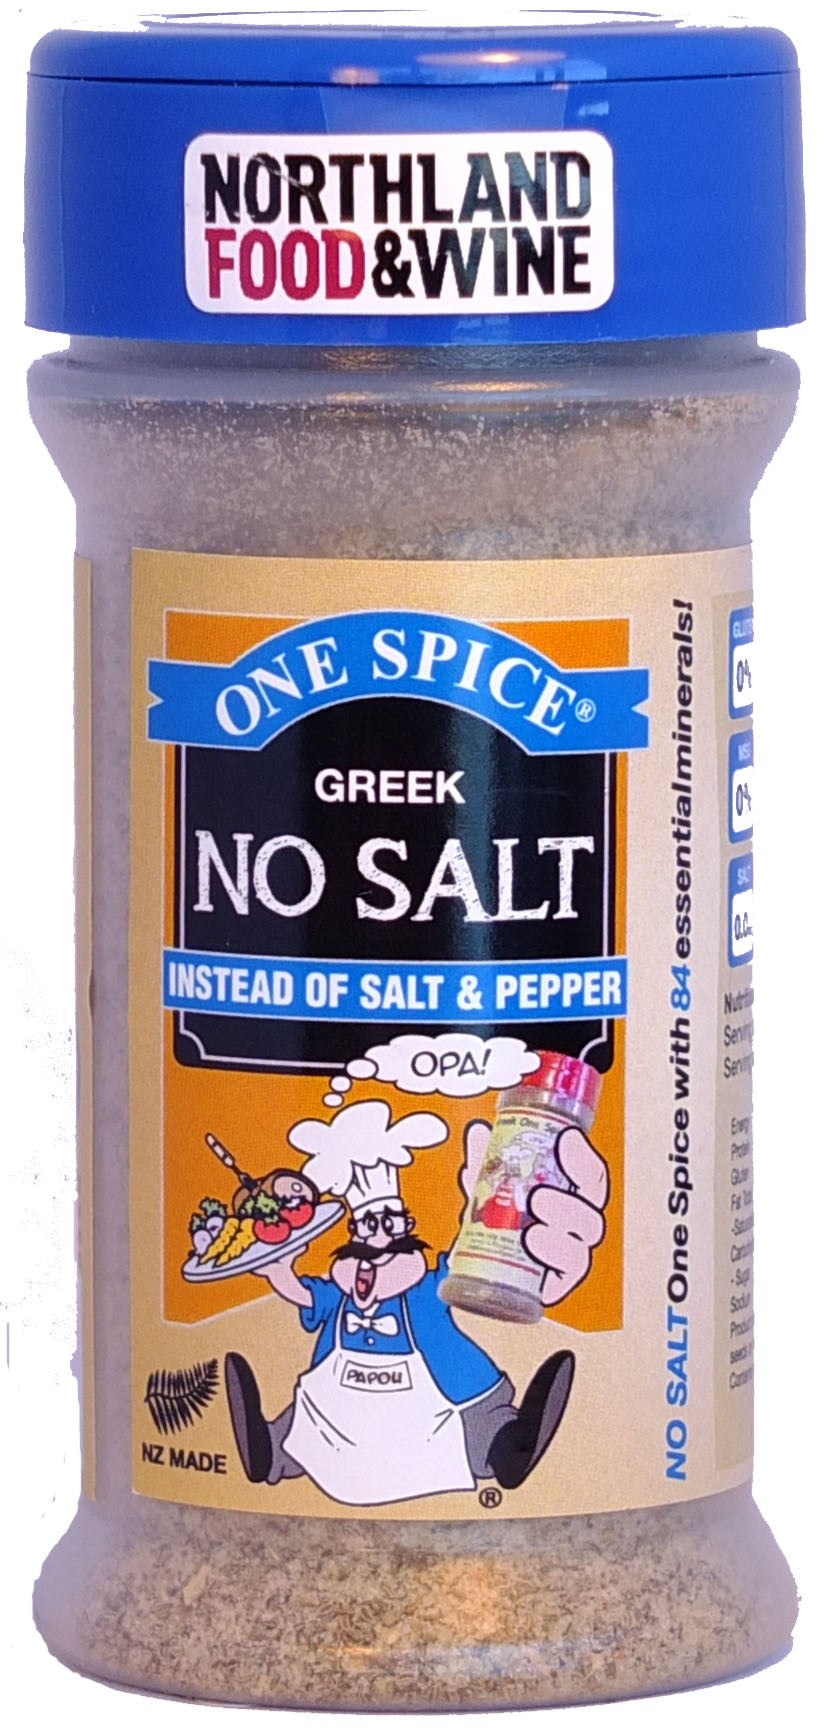 https://greekonespice.com/cdn/shop/products/No_Salt_copy.jpg?v=1557192854